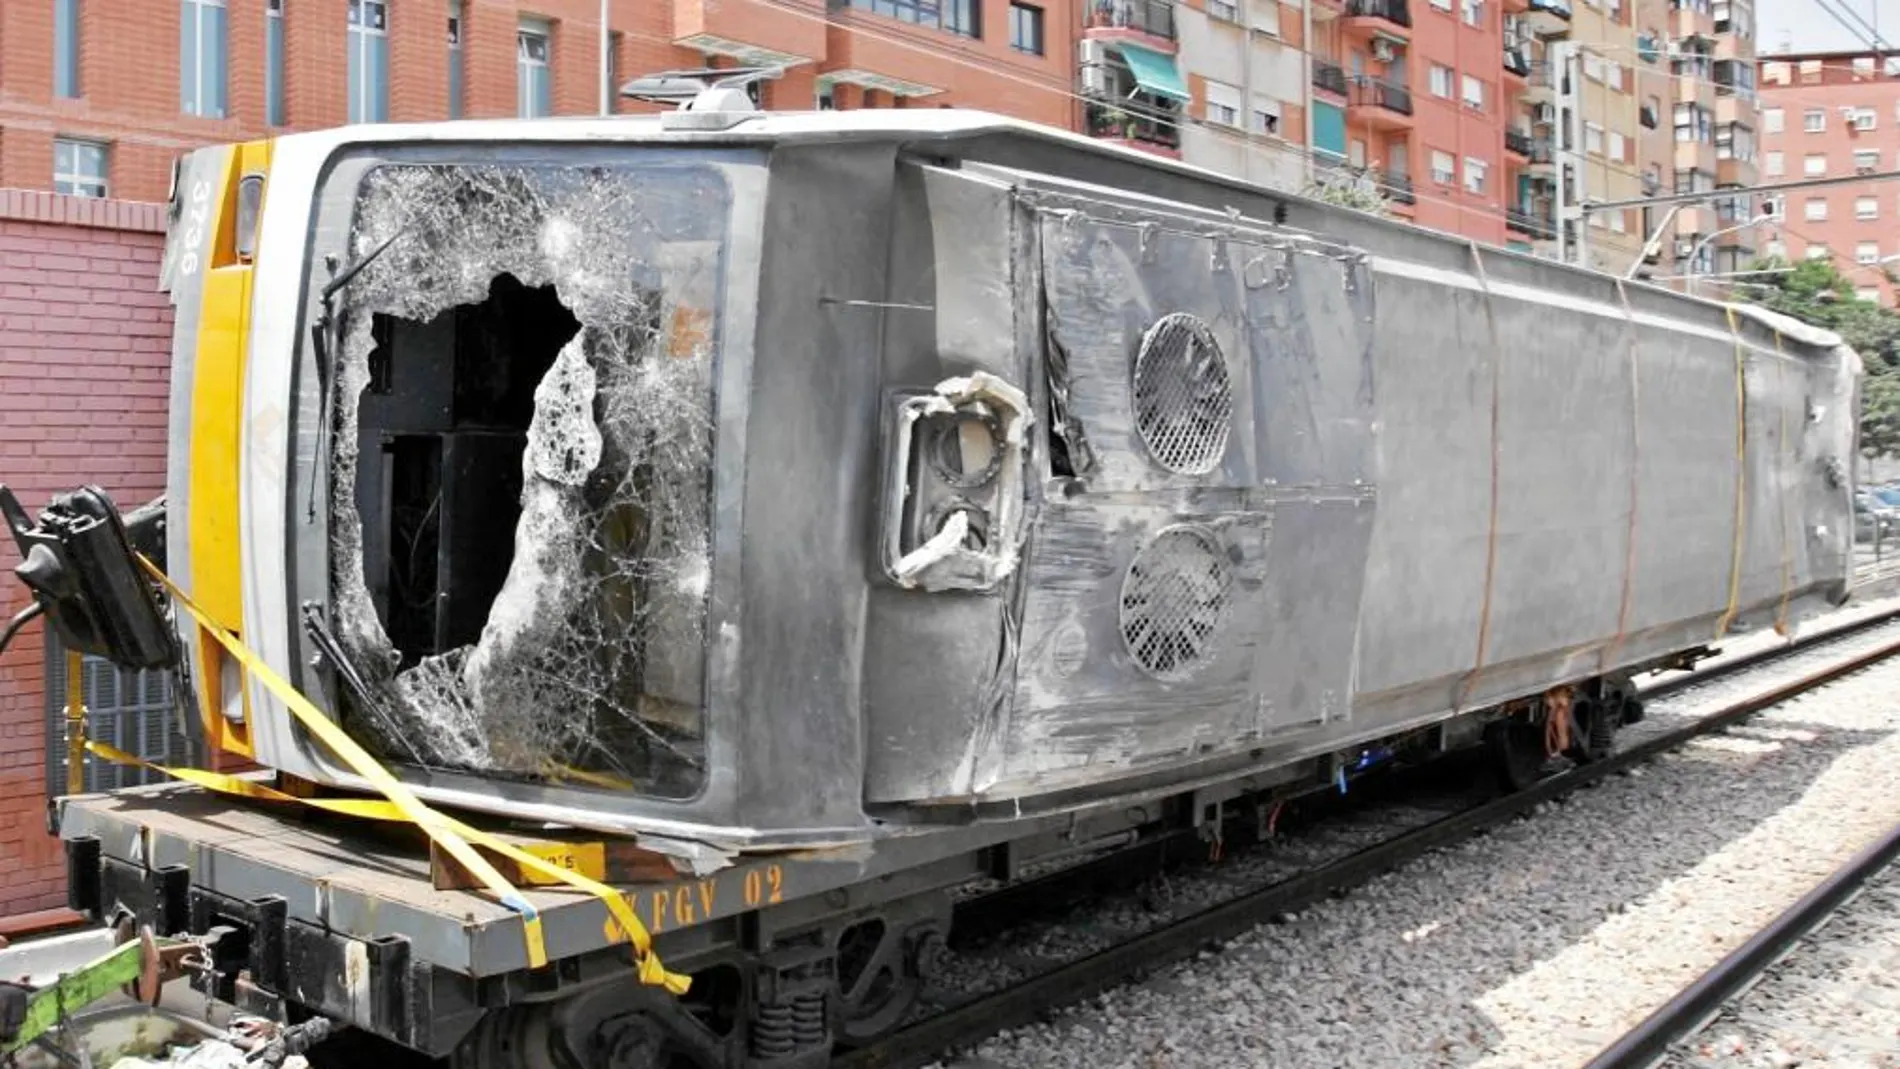 Imagen del metro accidentado el 3 de julio del año 2006 en el que fallecieron 43 personas